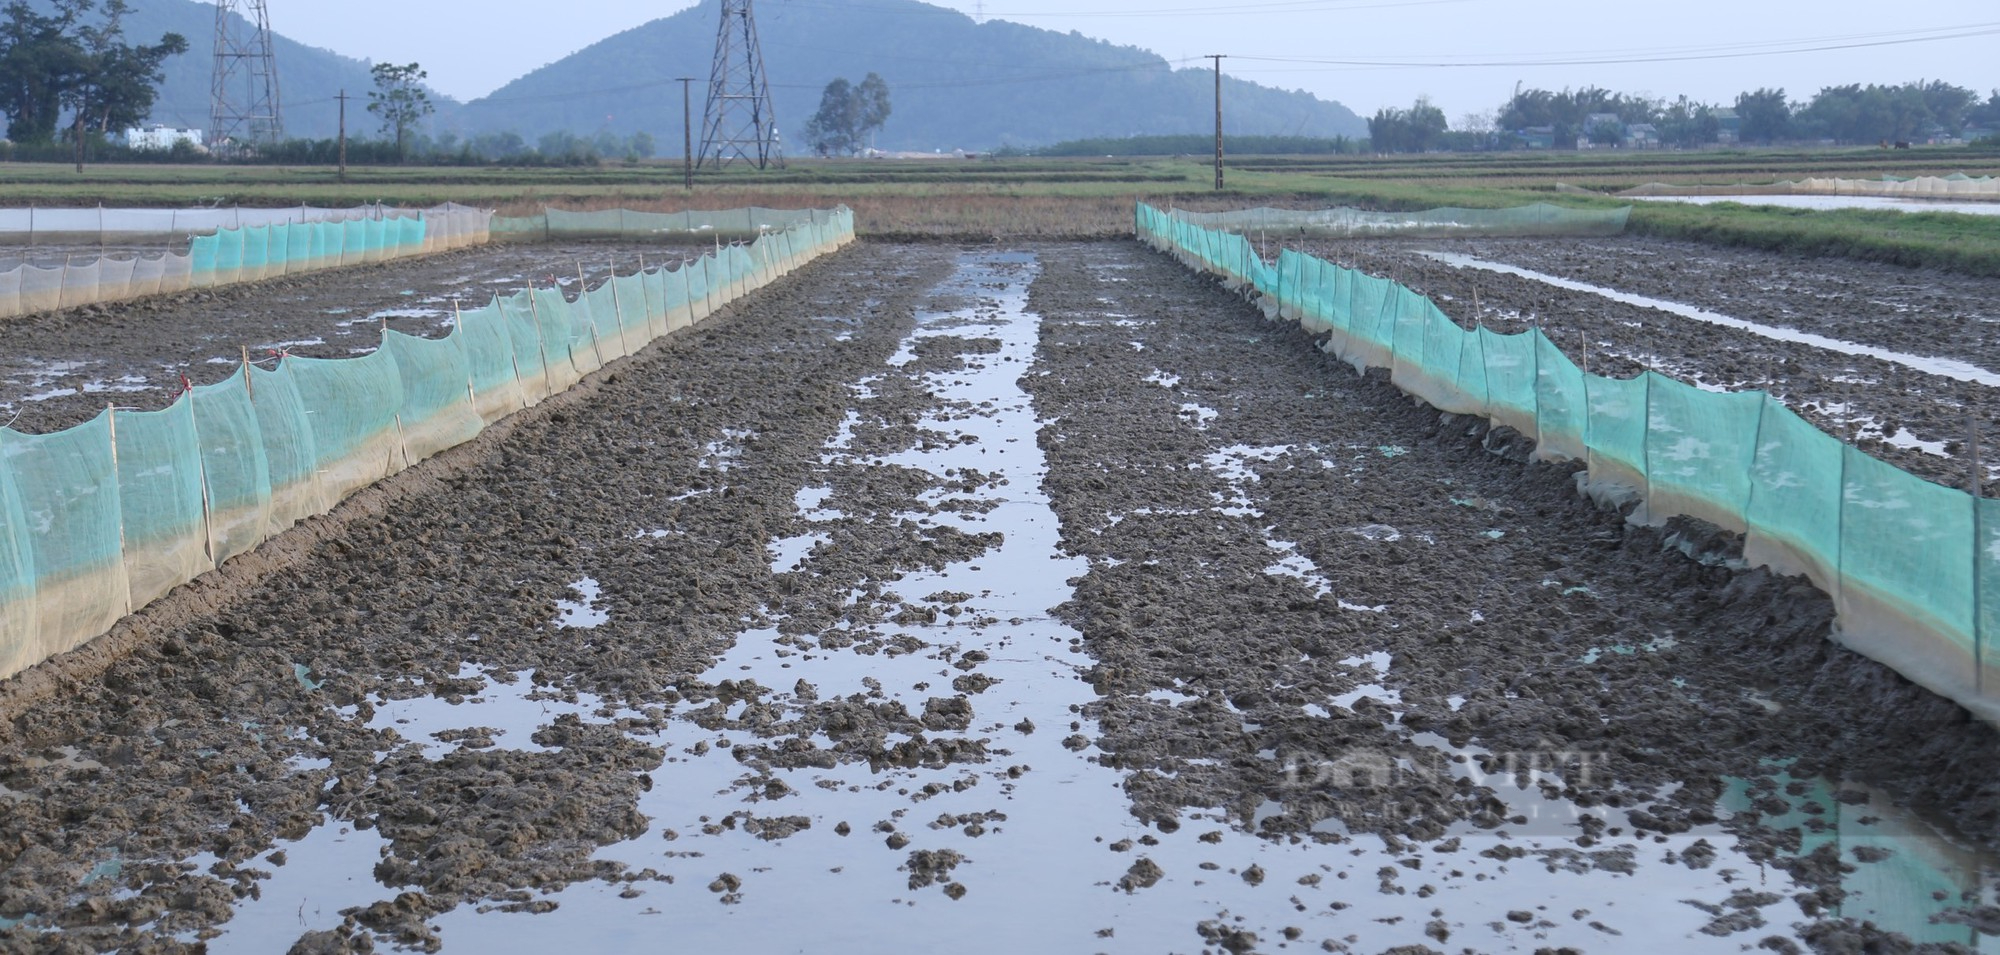 Nông dân vùng hạ du sông Lam giăng lưới kín ruộng để chờ điều bất ngờ từ loài đặc sản có giá đắt đỏ - Ảnh 2.